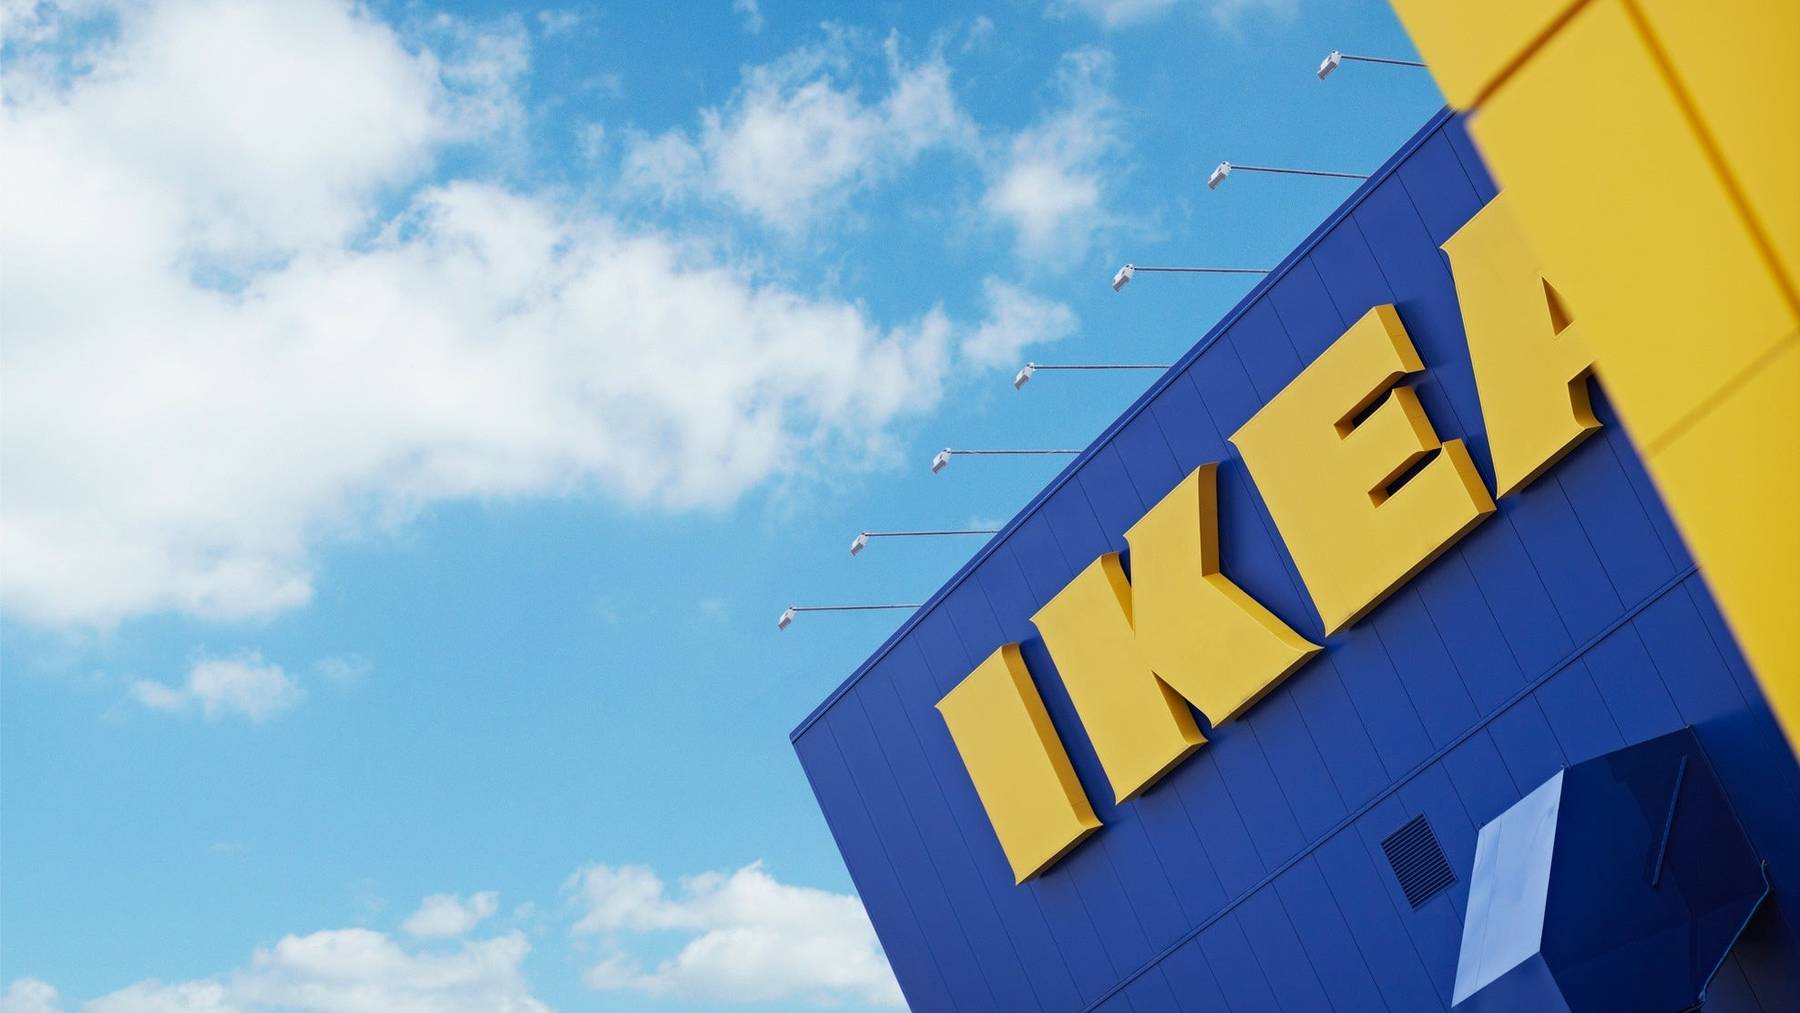 Ikea Schweiz rechnet damit, dass ihnen während dem Lockdown über 100 Millionen Franken Umsatz entgangen sind.